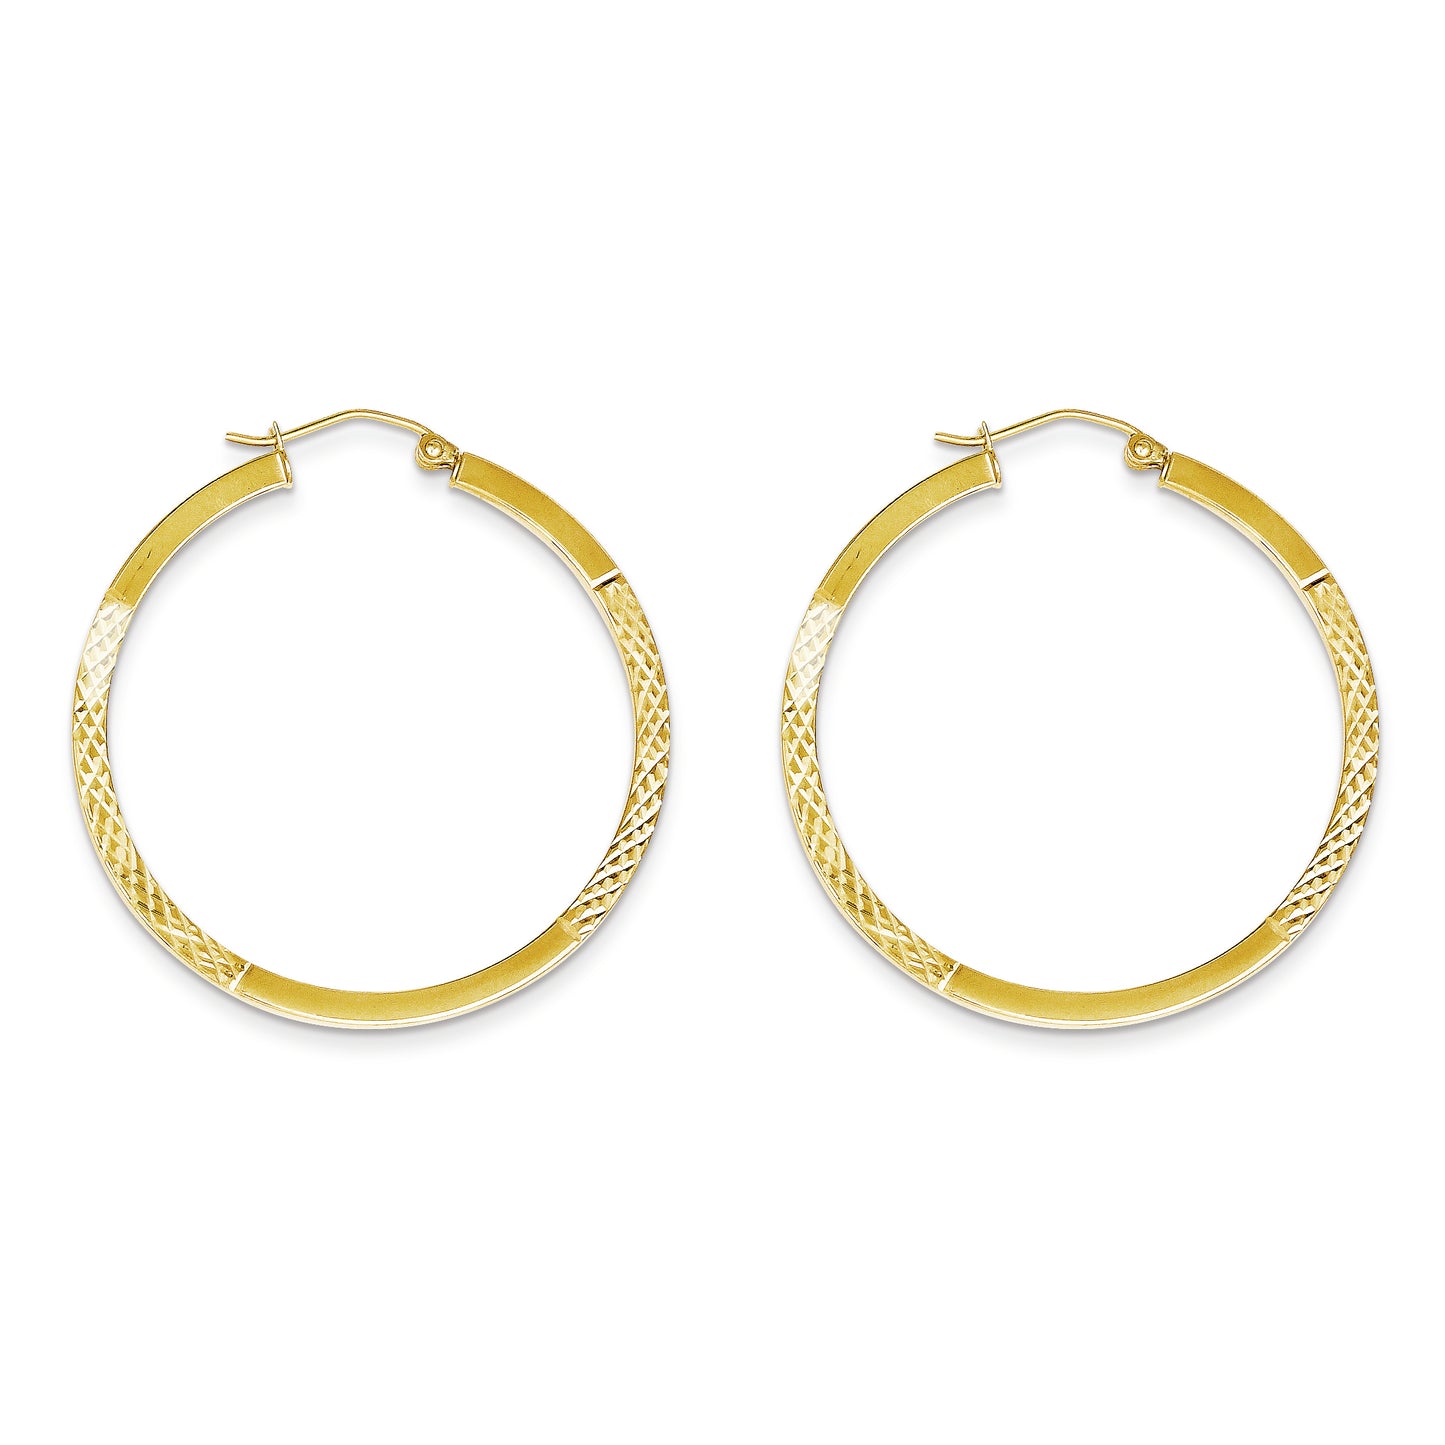 10K Gold Diamond Cut 2.5x40mm Hoop Earrings